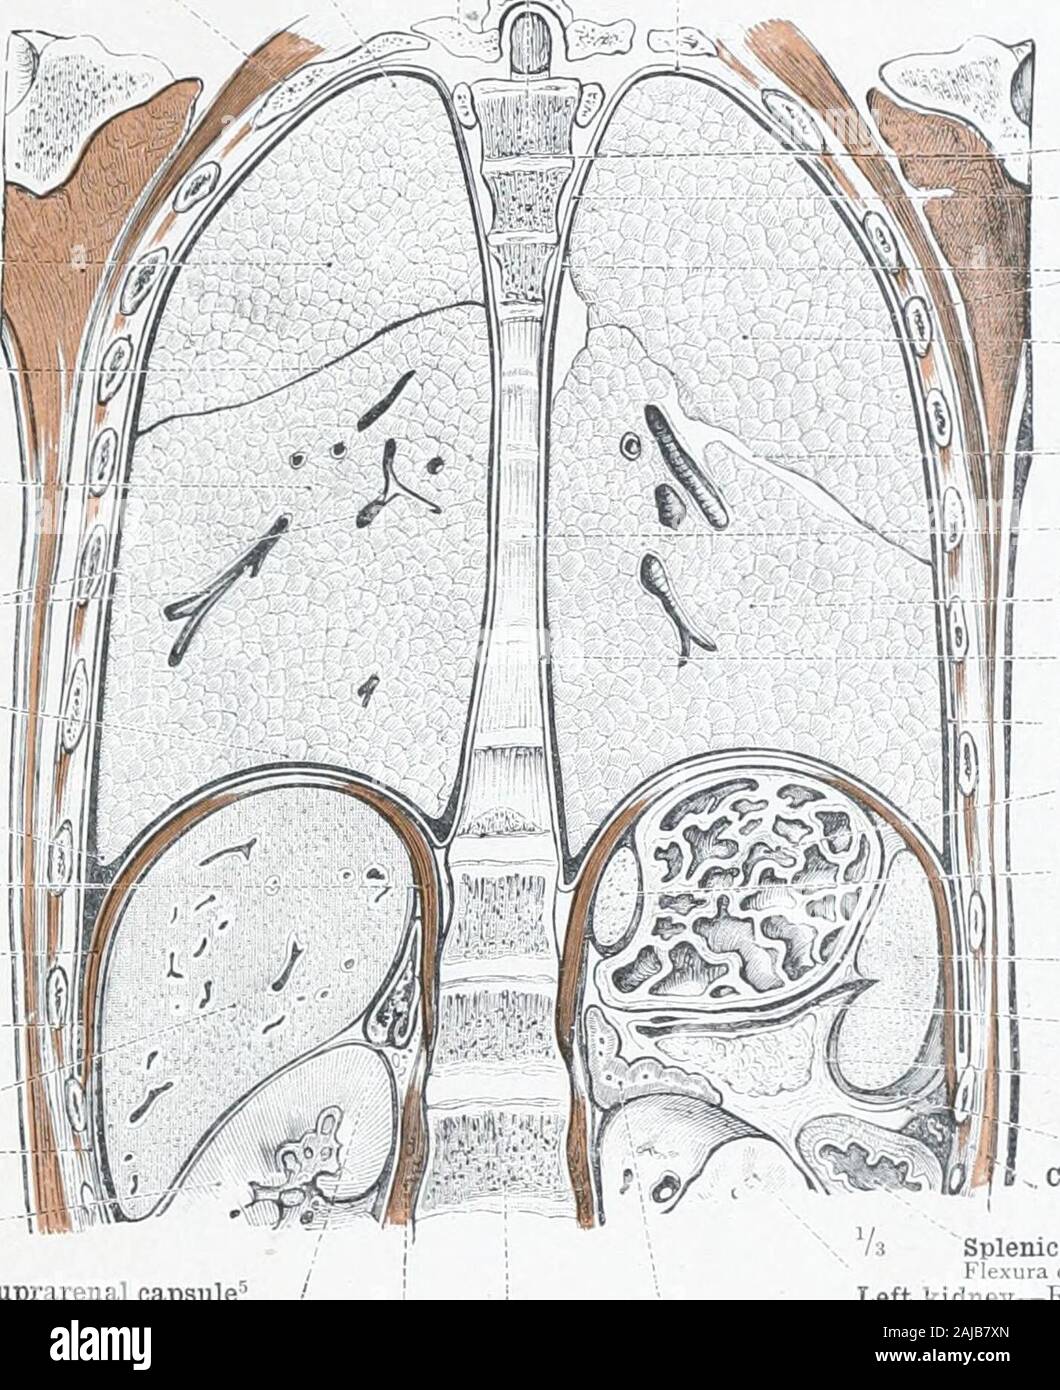 Un atlante di anatomia umana per gli studenti e i medici . acalis 11.I pleura cervicale Cupula pleura; - Superior mediastino-mediastinica strato della pleura-Laminamediastinalis pleura;i. Cavo pleurico,Cavum pleura-lobo superiore di sinistra superiore lungLobus pulmonis sinistriInterlobar fessura^Incisura interlobarisPosterior mediastino- - Cavum mediastinaleposterius lobo inferiore del polmone sinistro l.obus inferiori sinistri pulmonis mediastino strato di lamina thepleura mediastinalis pleuK-e pleura costale Pleura costalis grande cul-de-sac o fundus dello stomaco (parete posteriore) Fundus ventriculi (parete Foto Stock